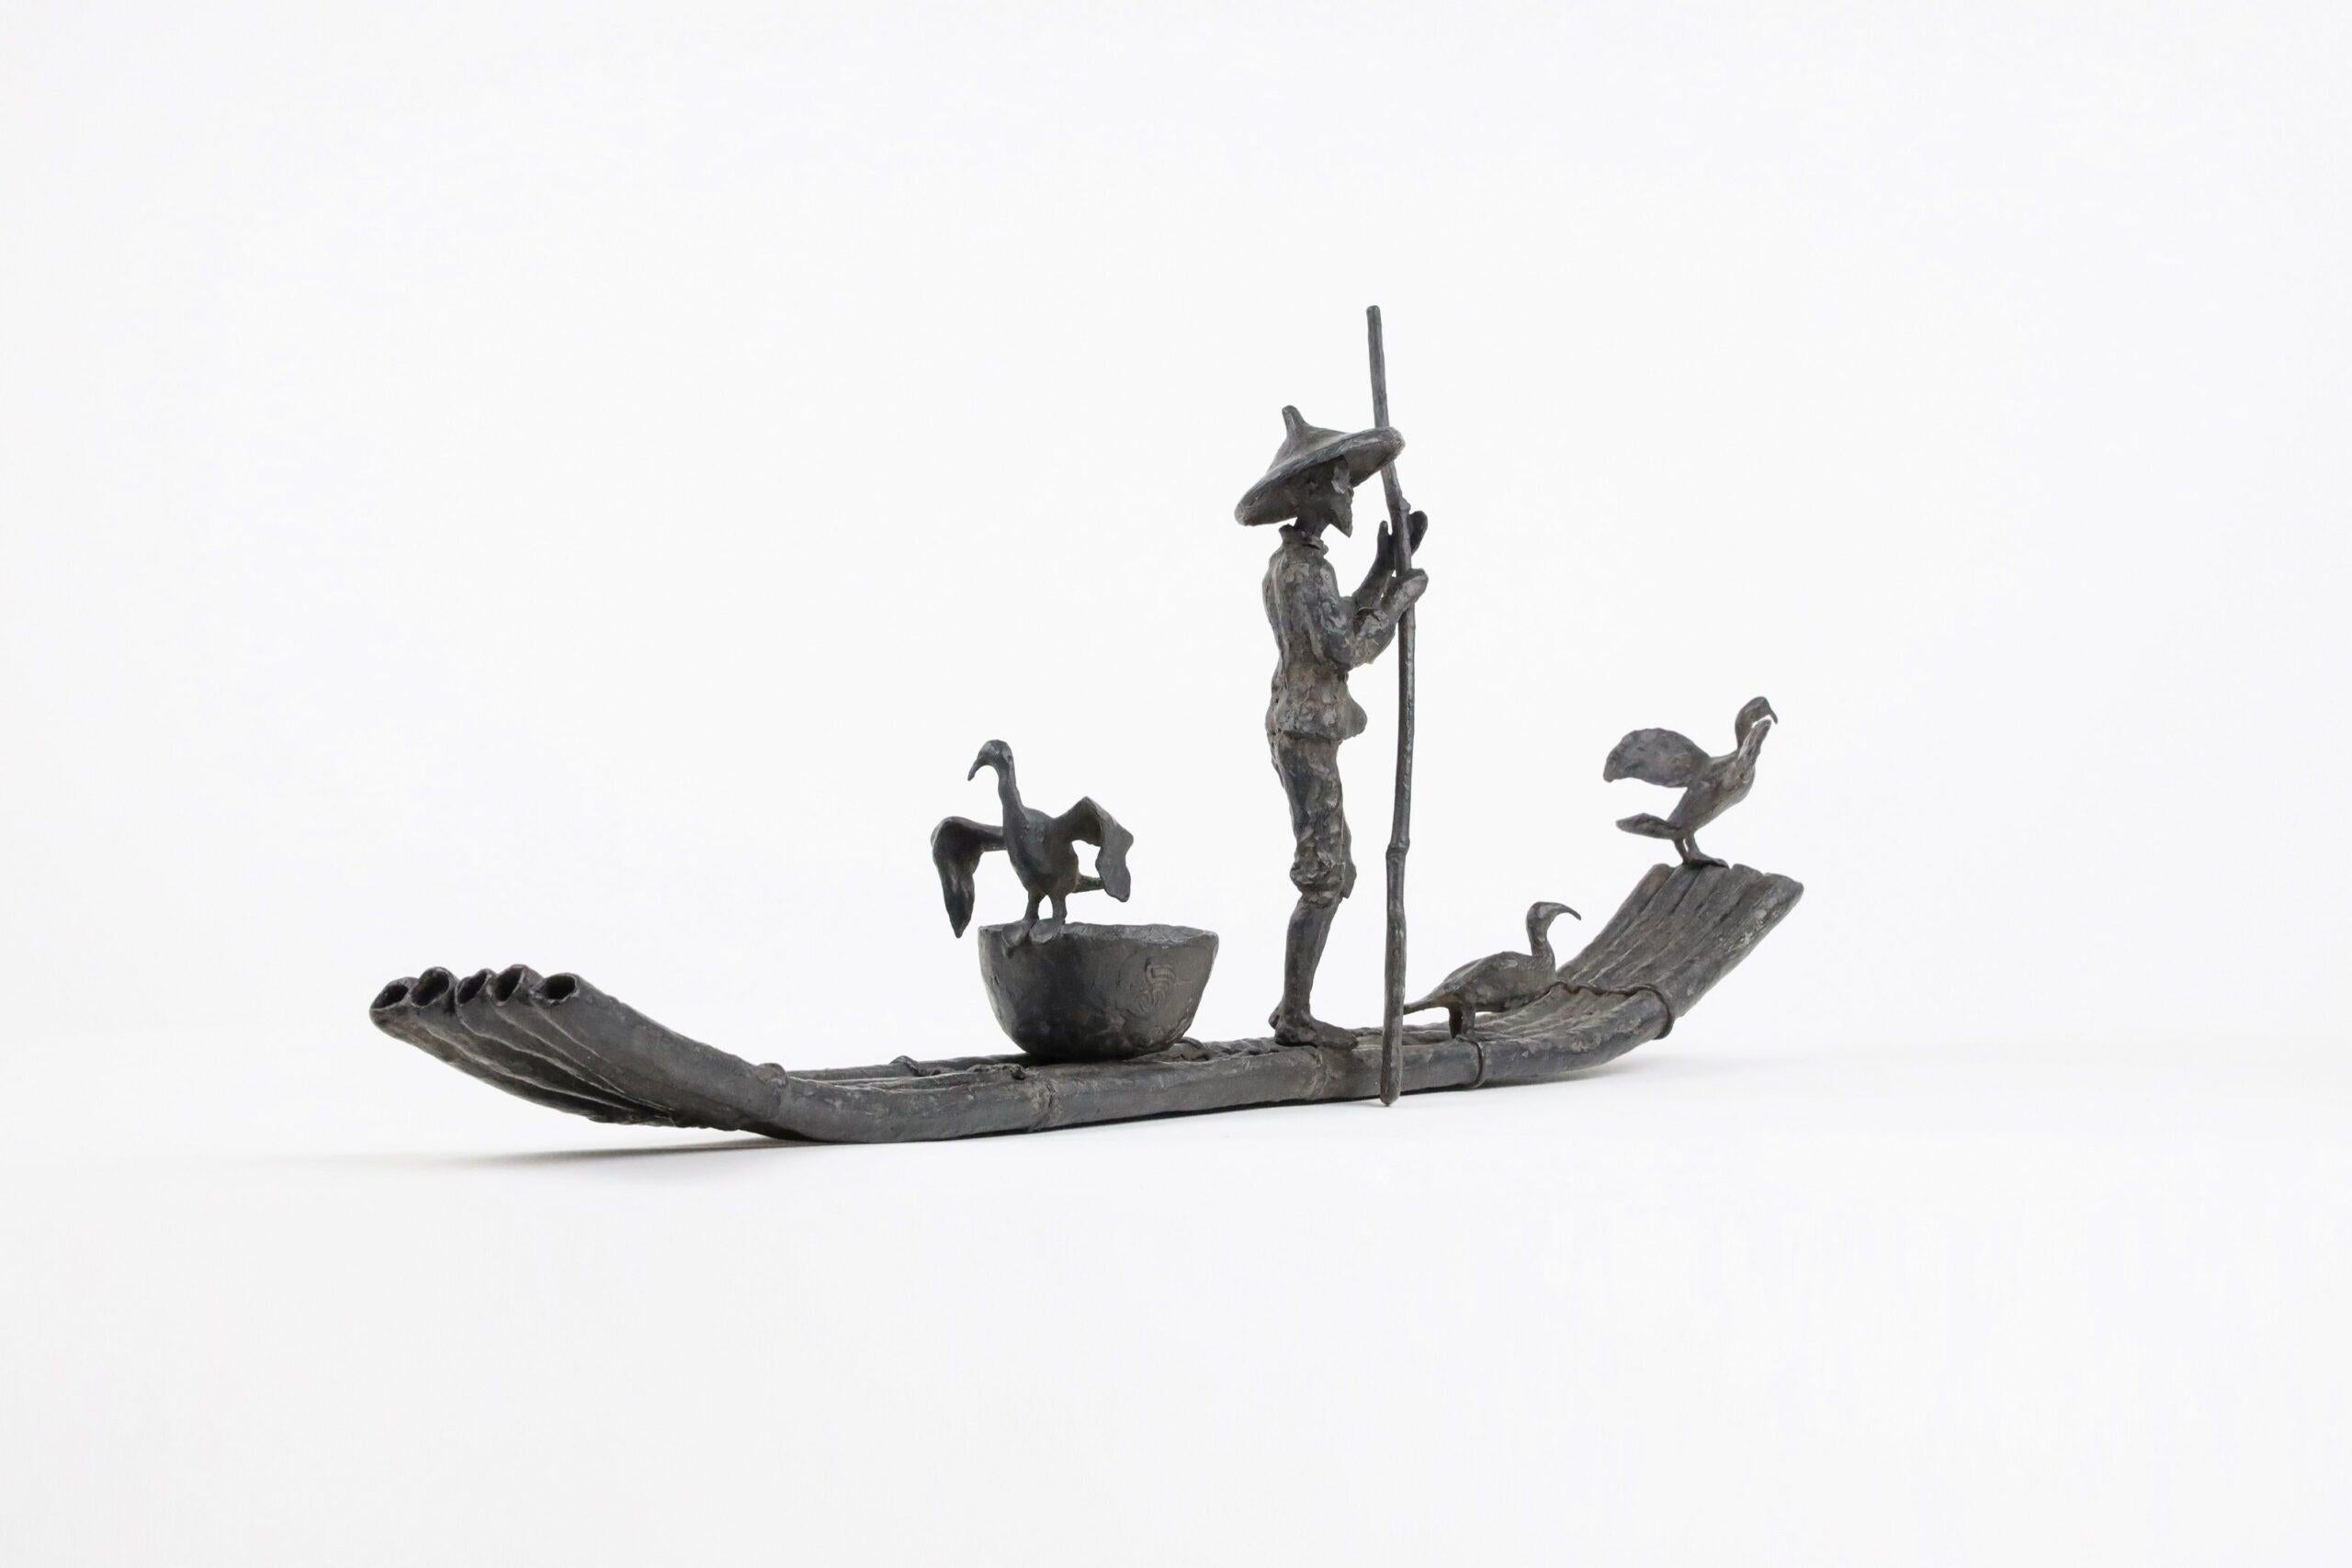 Cormorant Fishing by Marine de Soos - Bronze sculpture, human figure, boat, bird For Sale 1